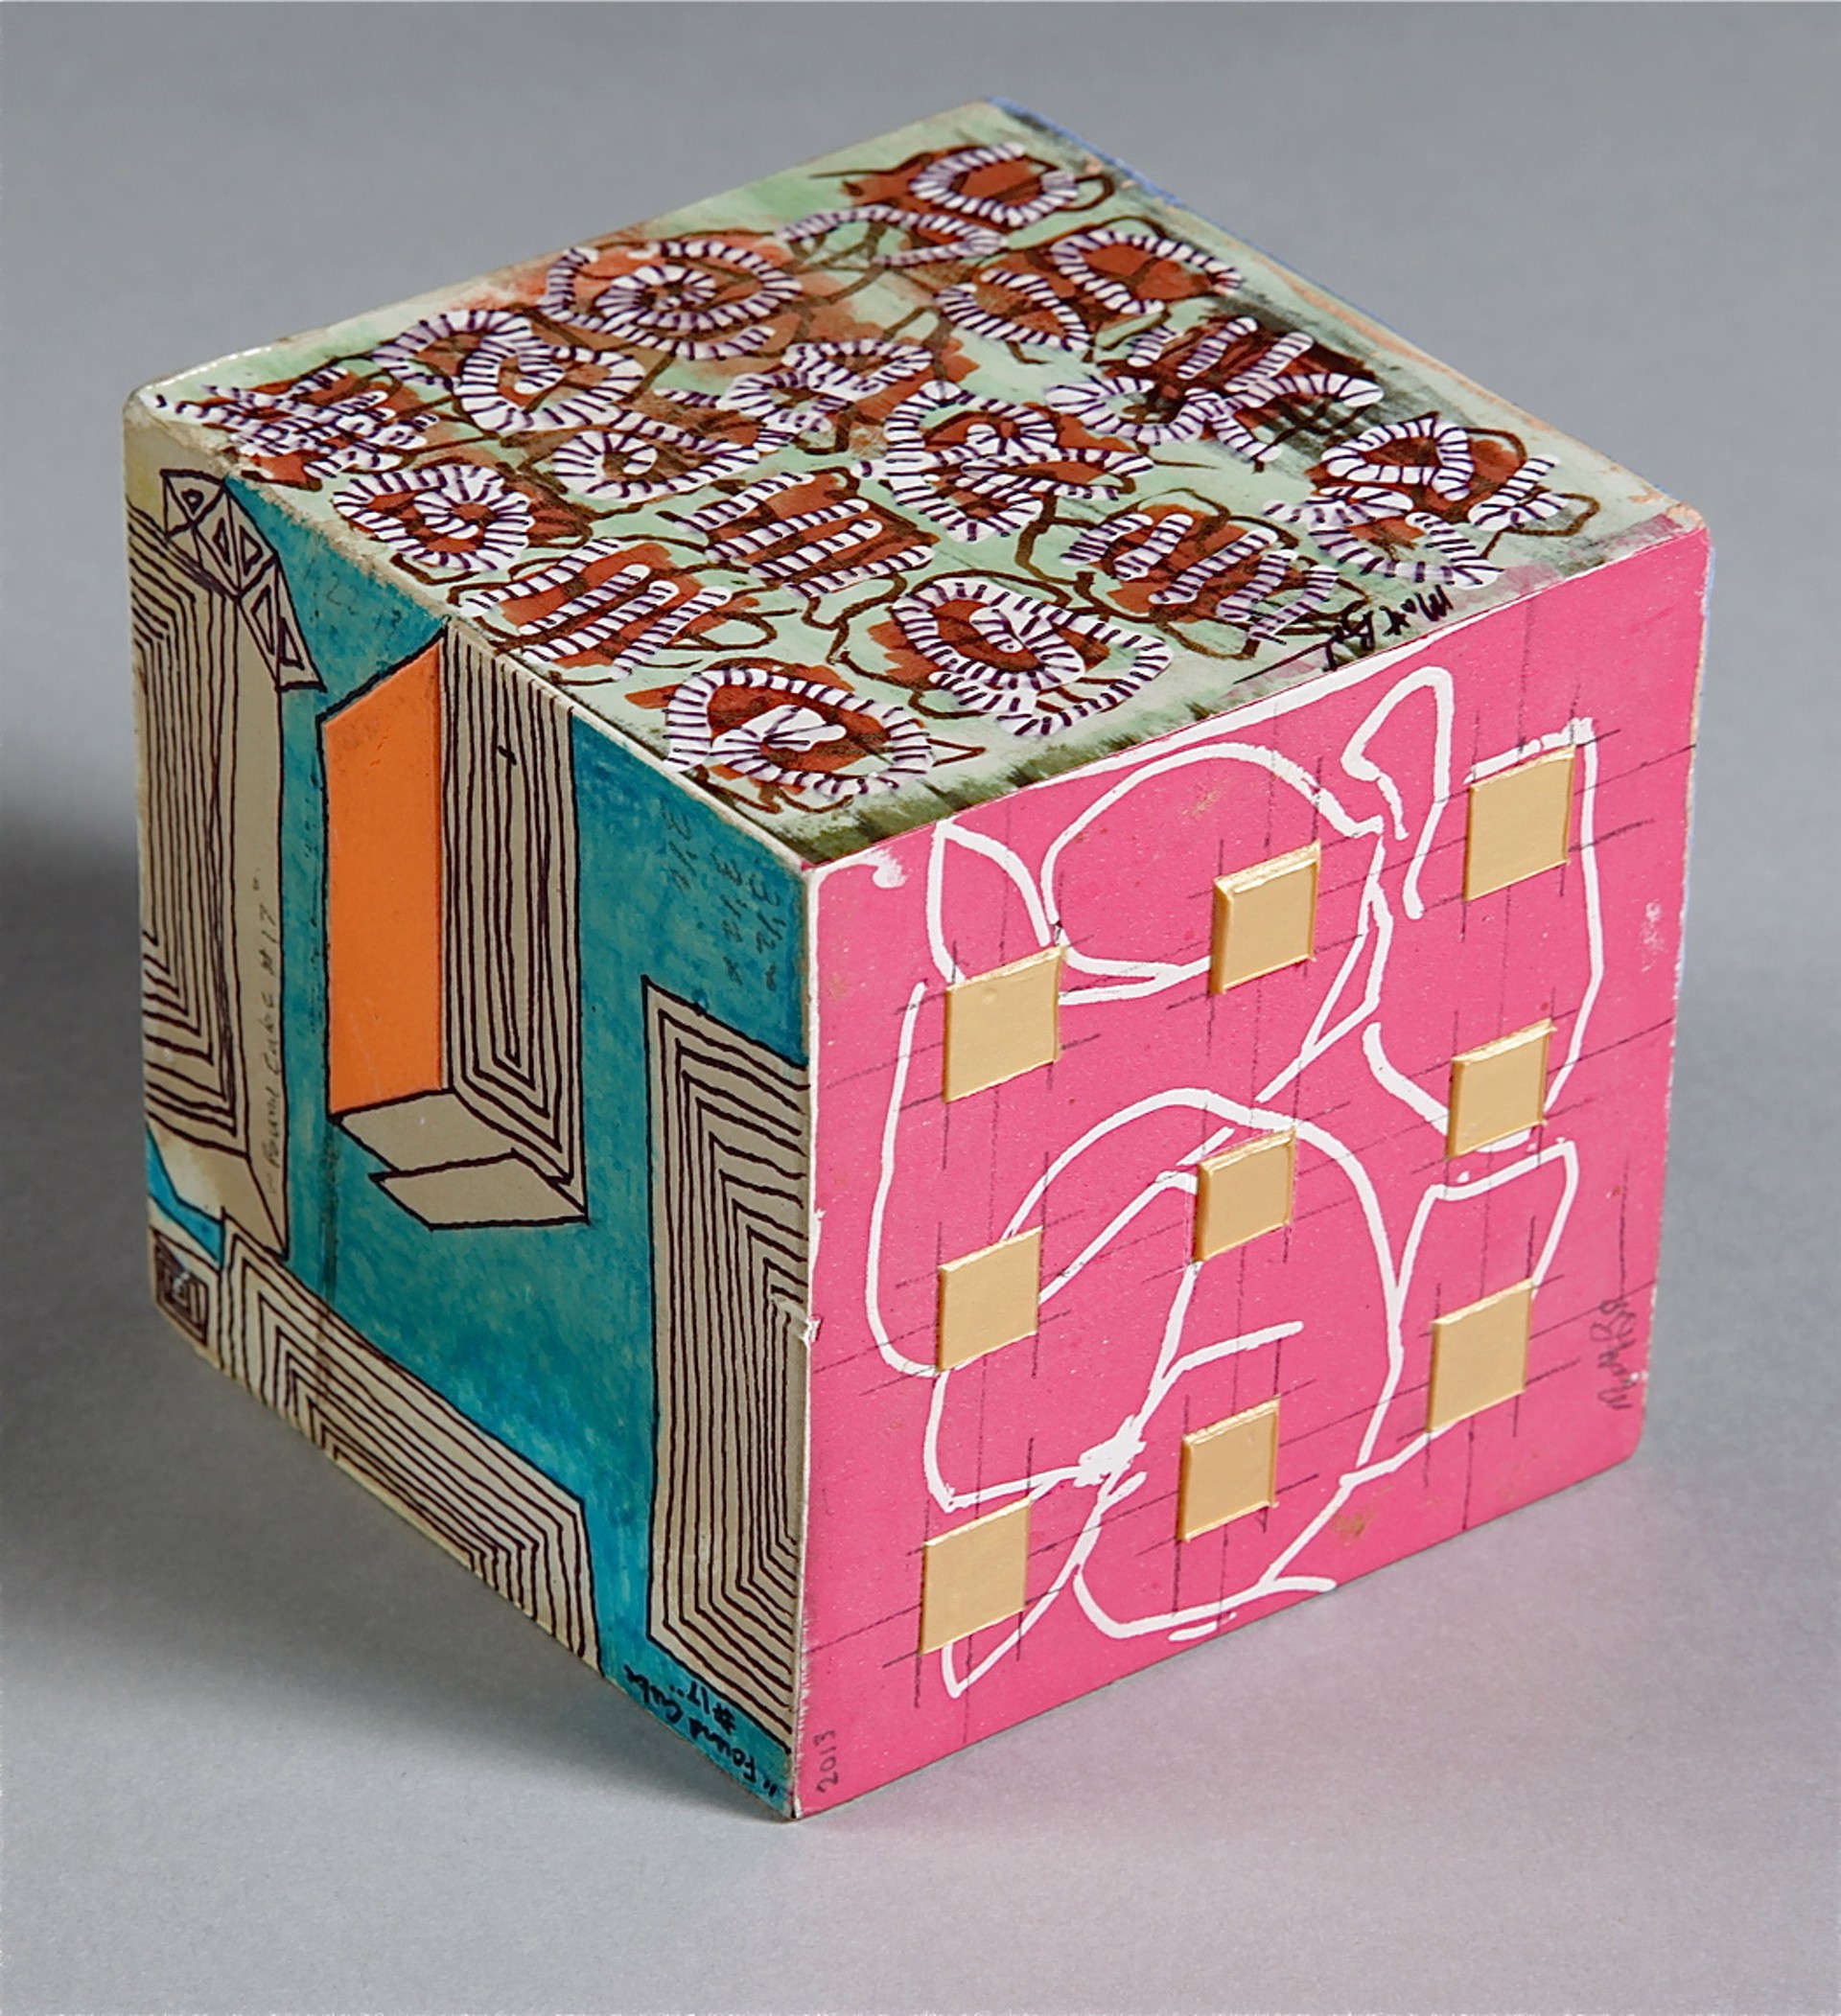 Found Cube #17 by Matthew Baumgardner